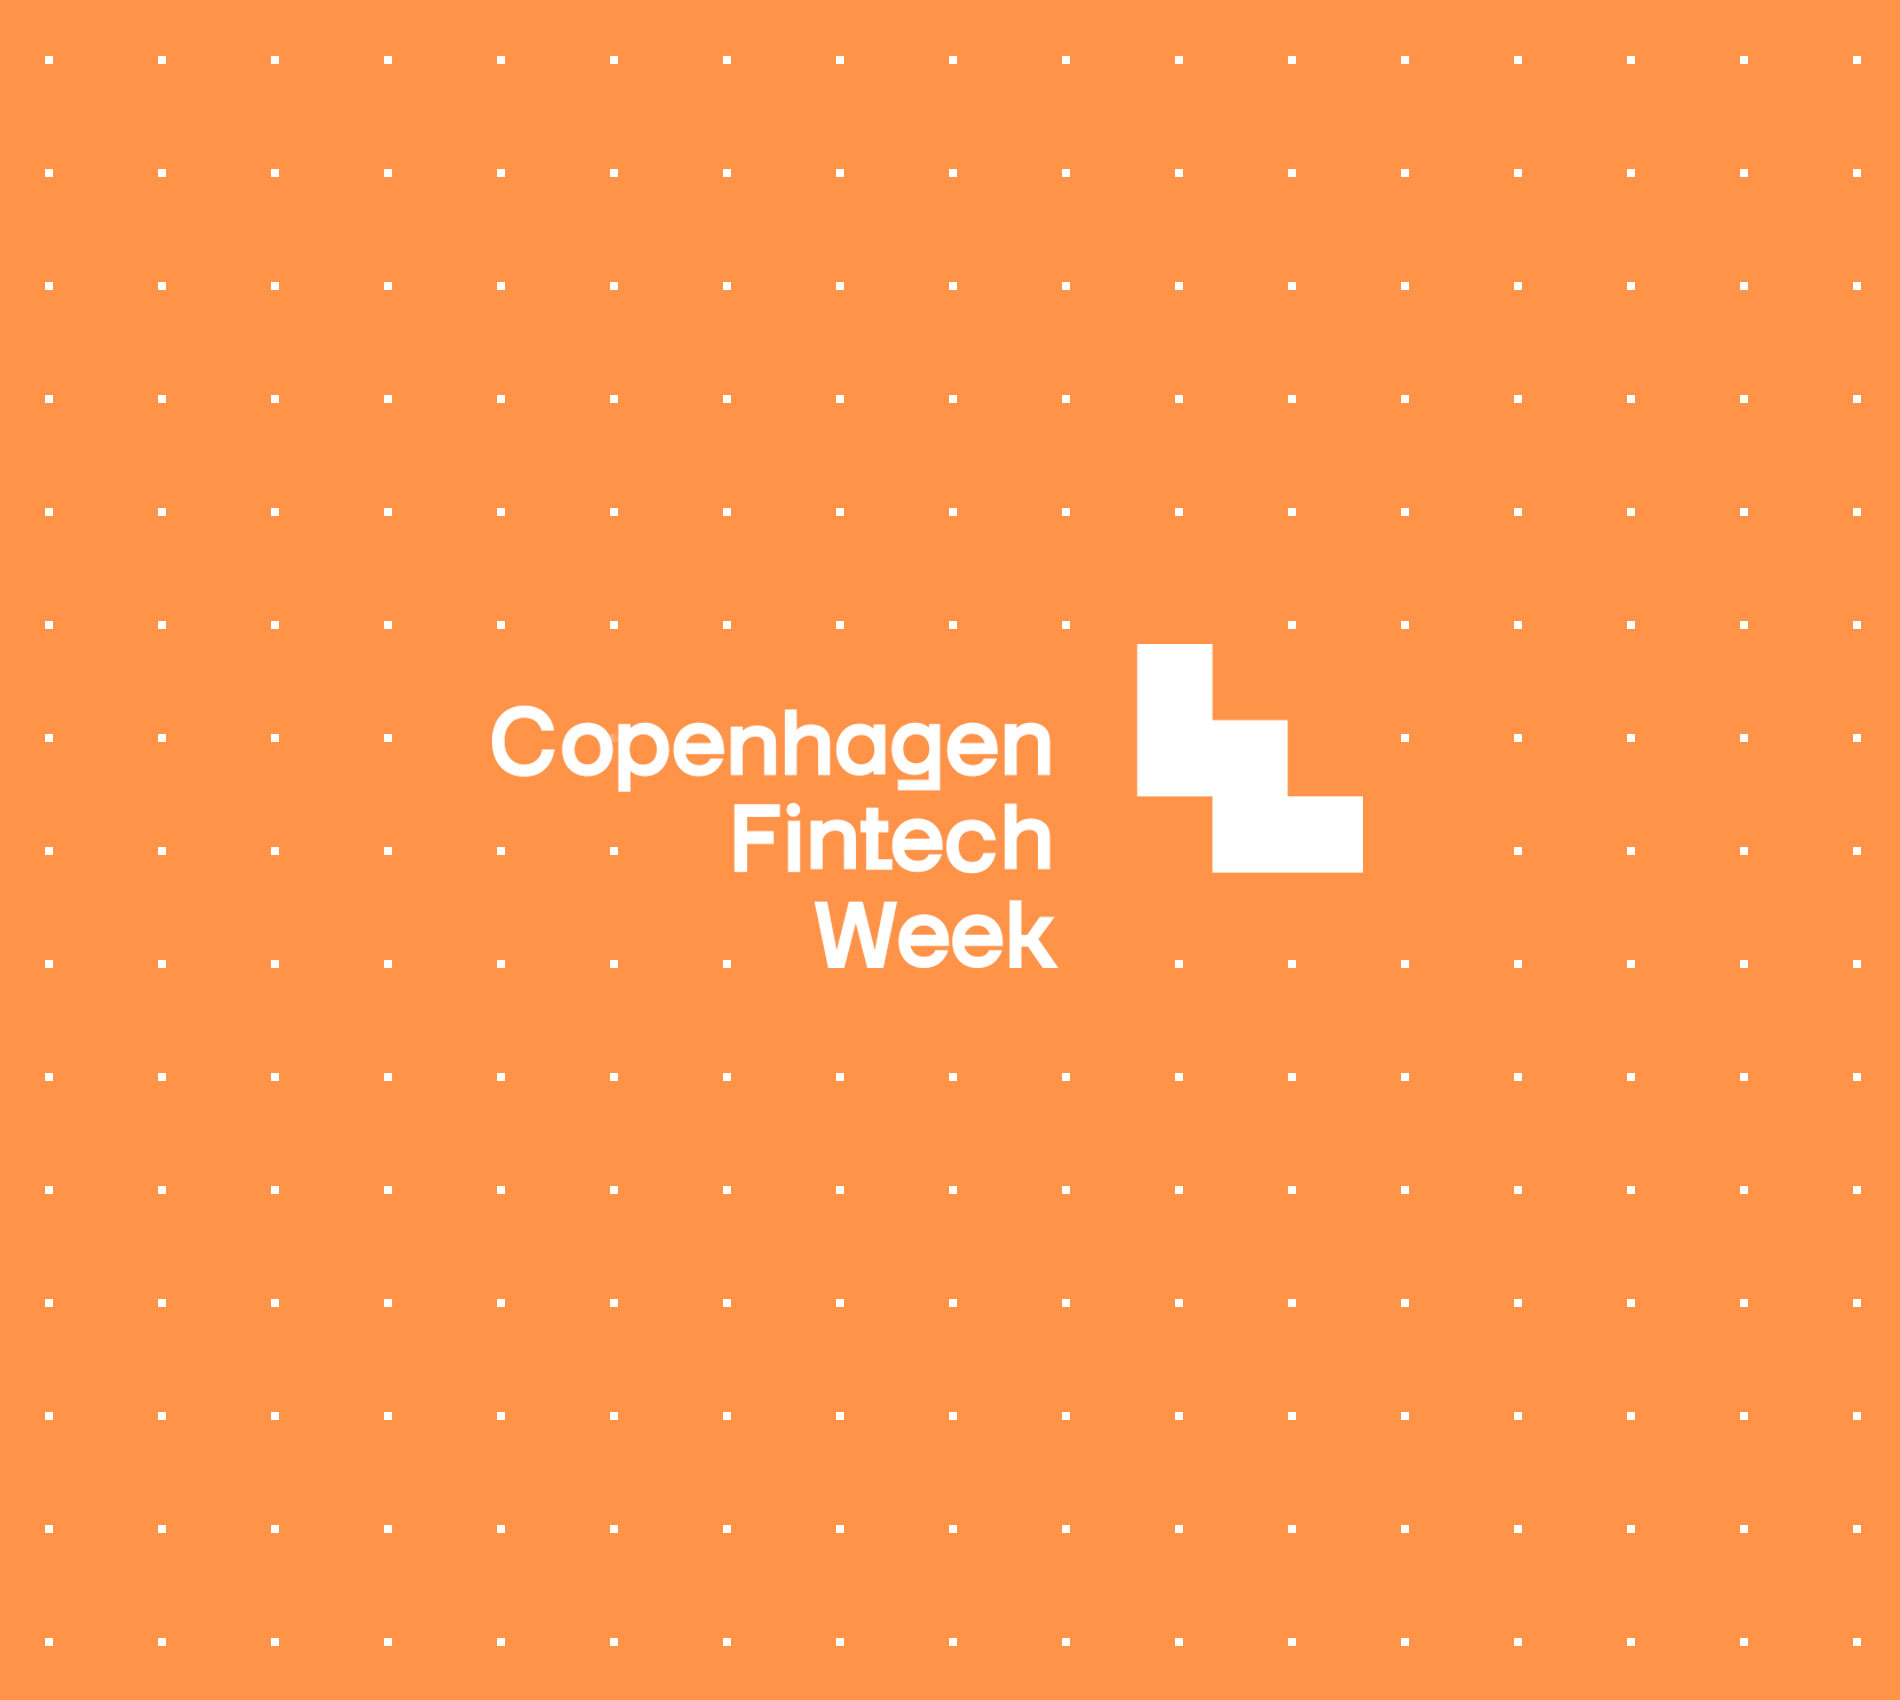 Copenhagen Fintech Week 2020